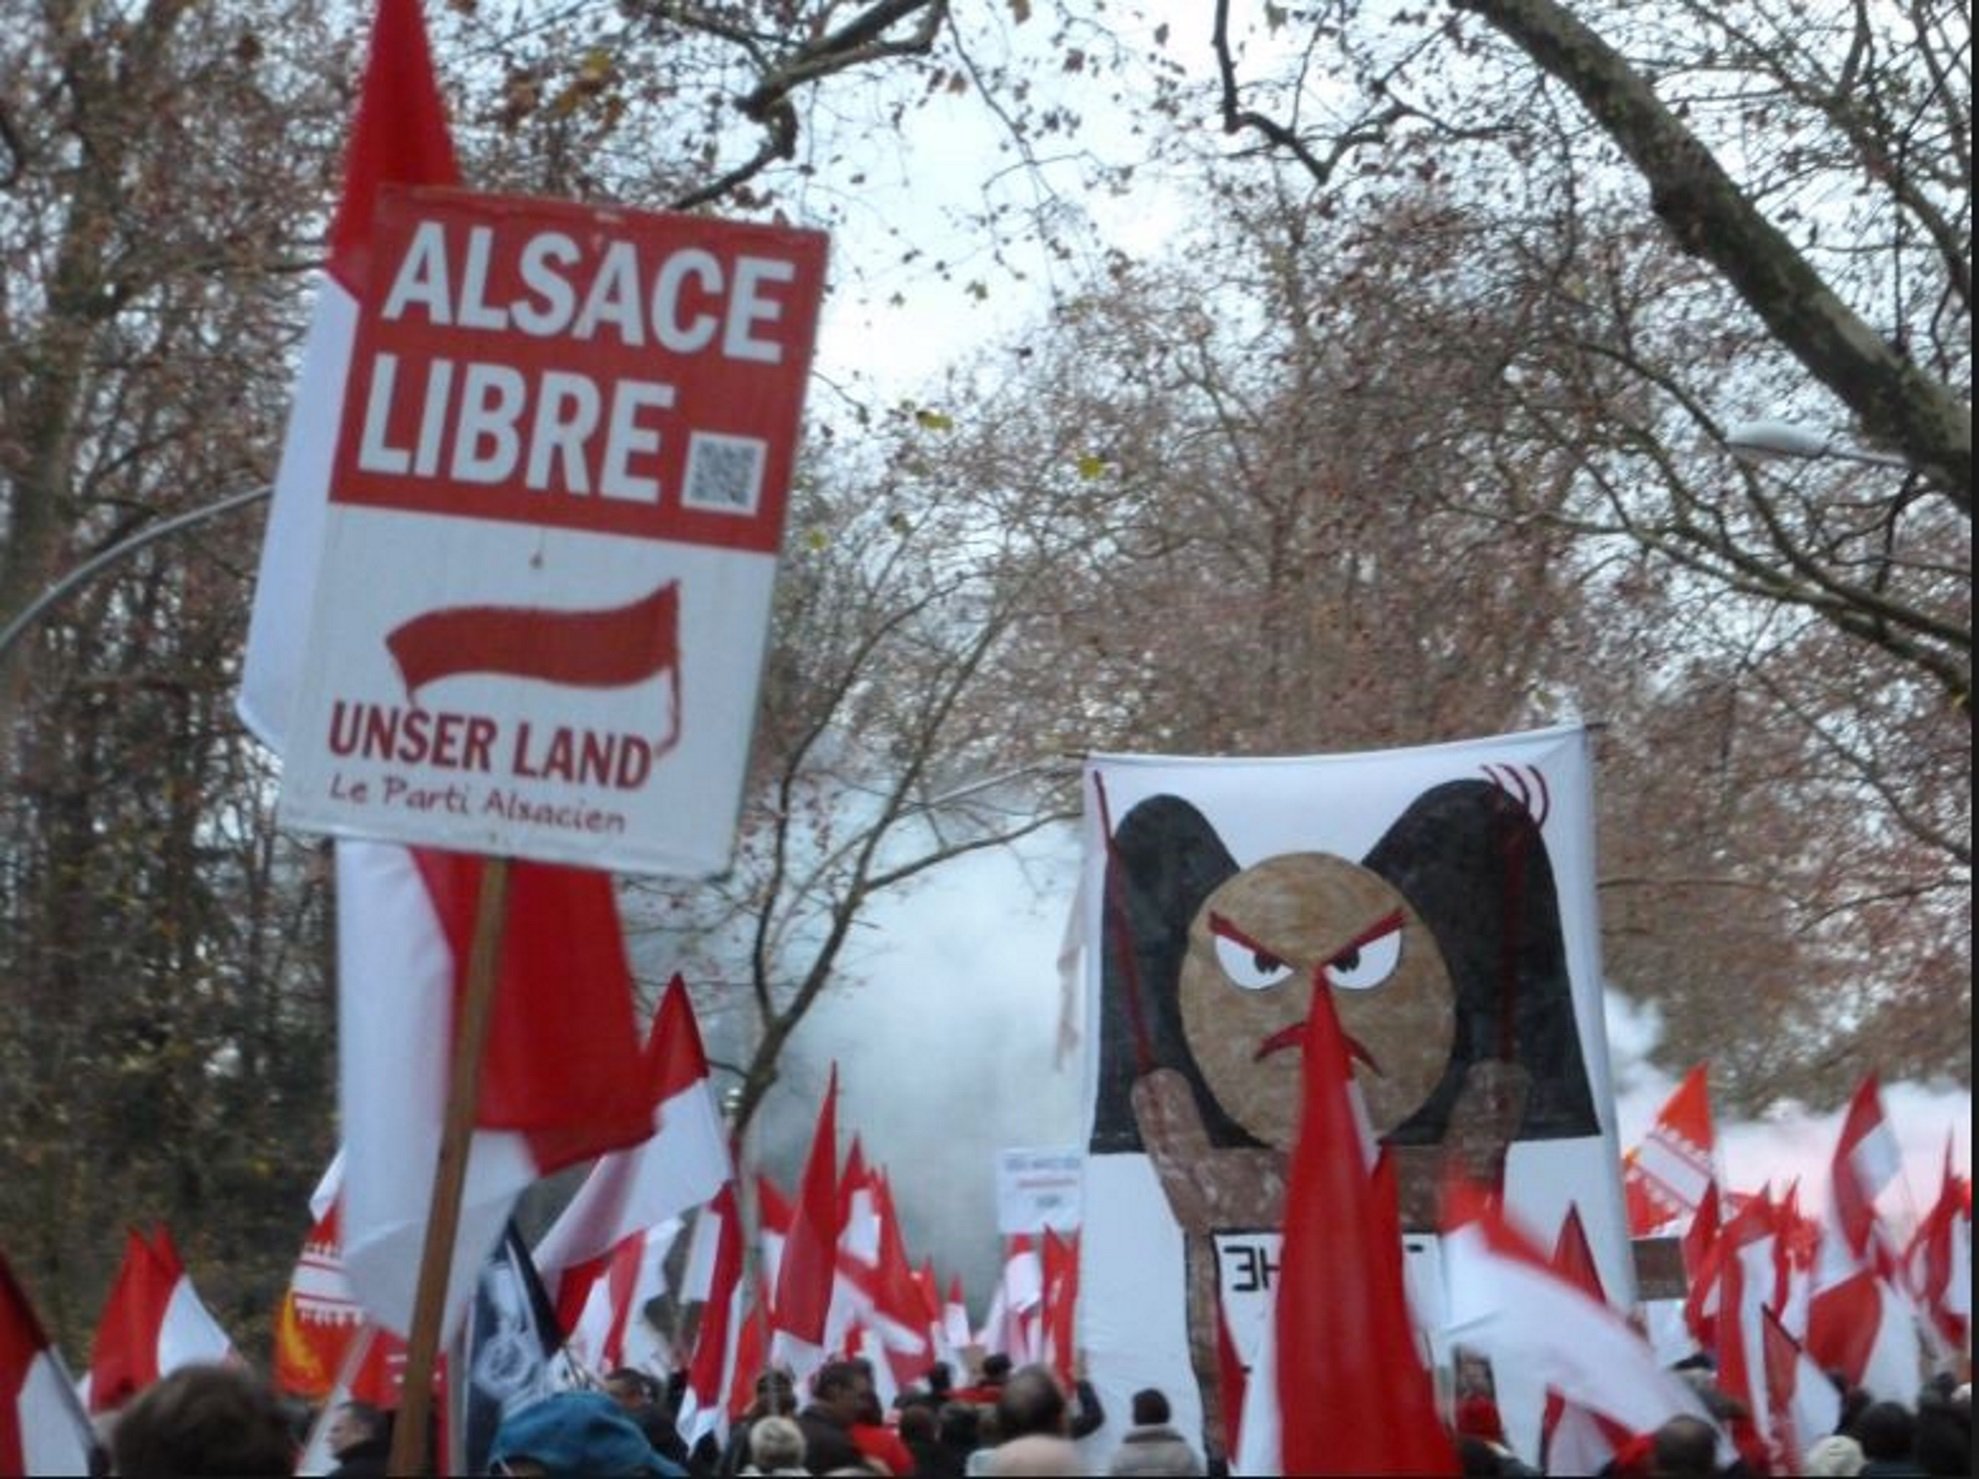 Unser Land llama a los alsacianos a manifestarse también el día 2 en Estrasburgo